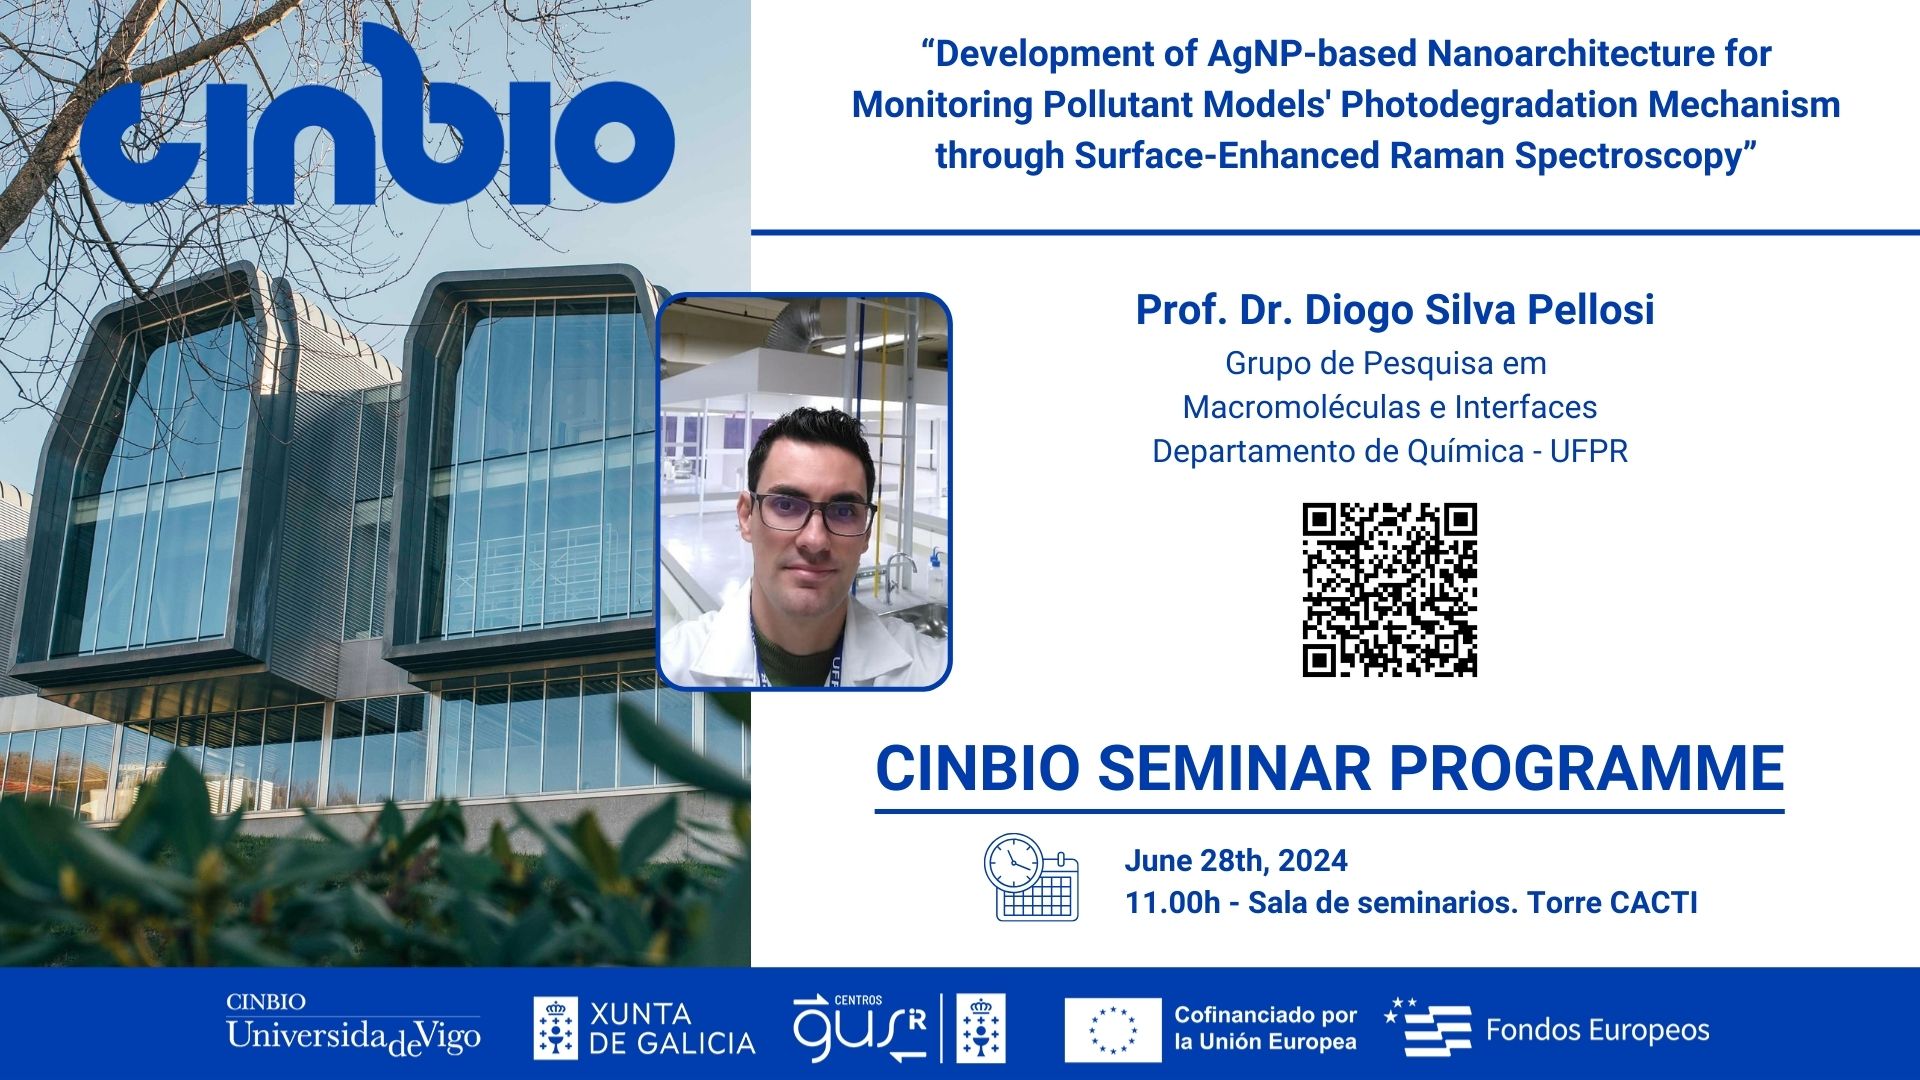 Dr. Diogo Silva Pellosi - CINBIO Seminar Programme